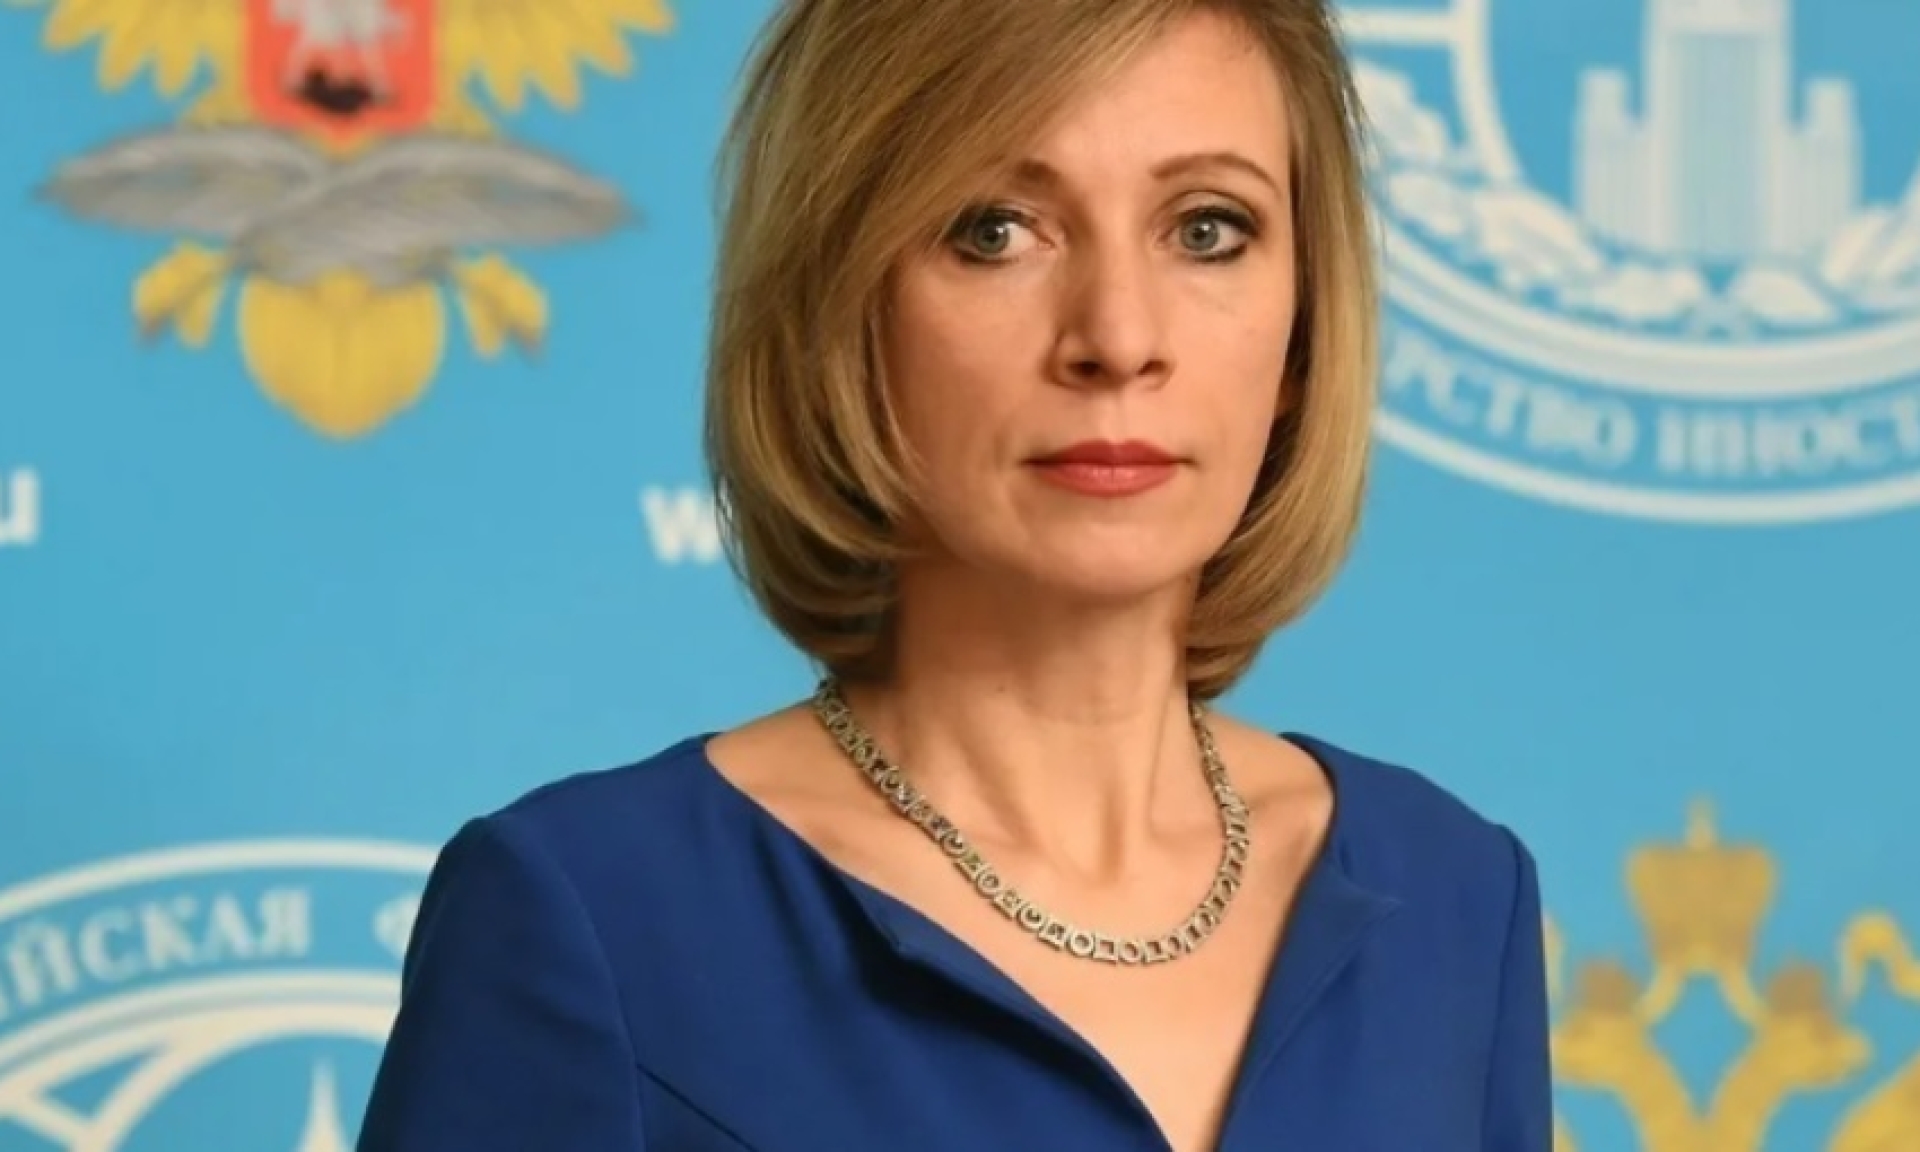 Захарова рассказала о взаимоотношении со странами в условиях санкций